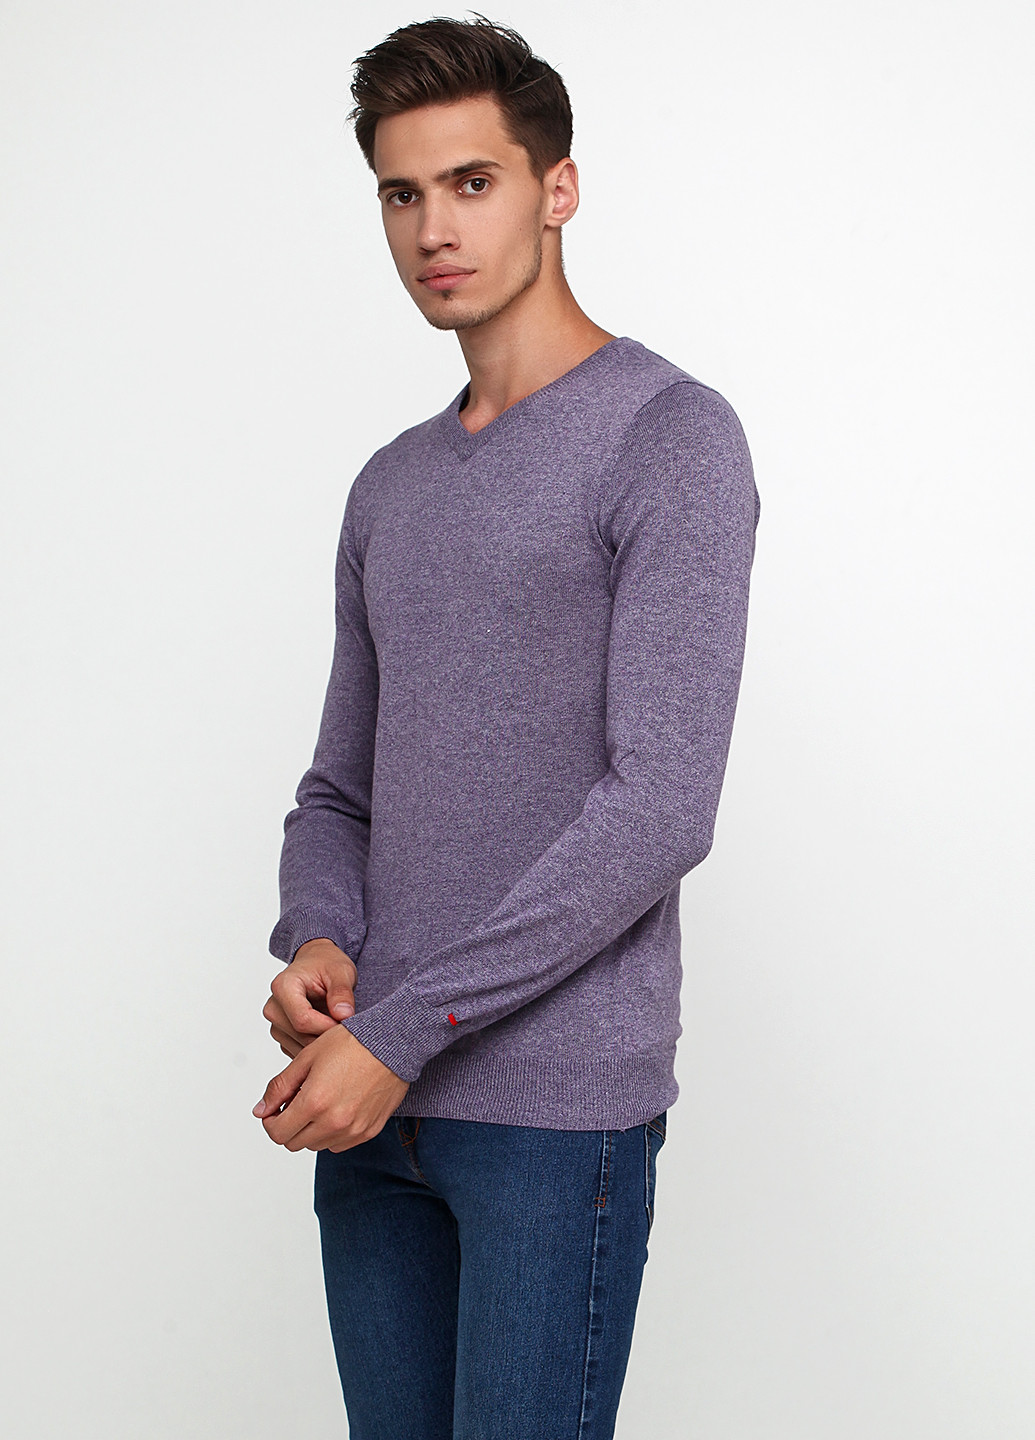 Сиреневый демисезонный пуловер пуловер Castro